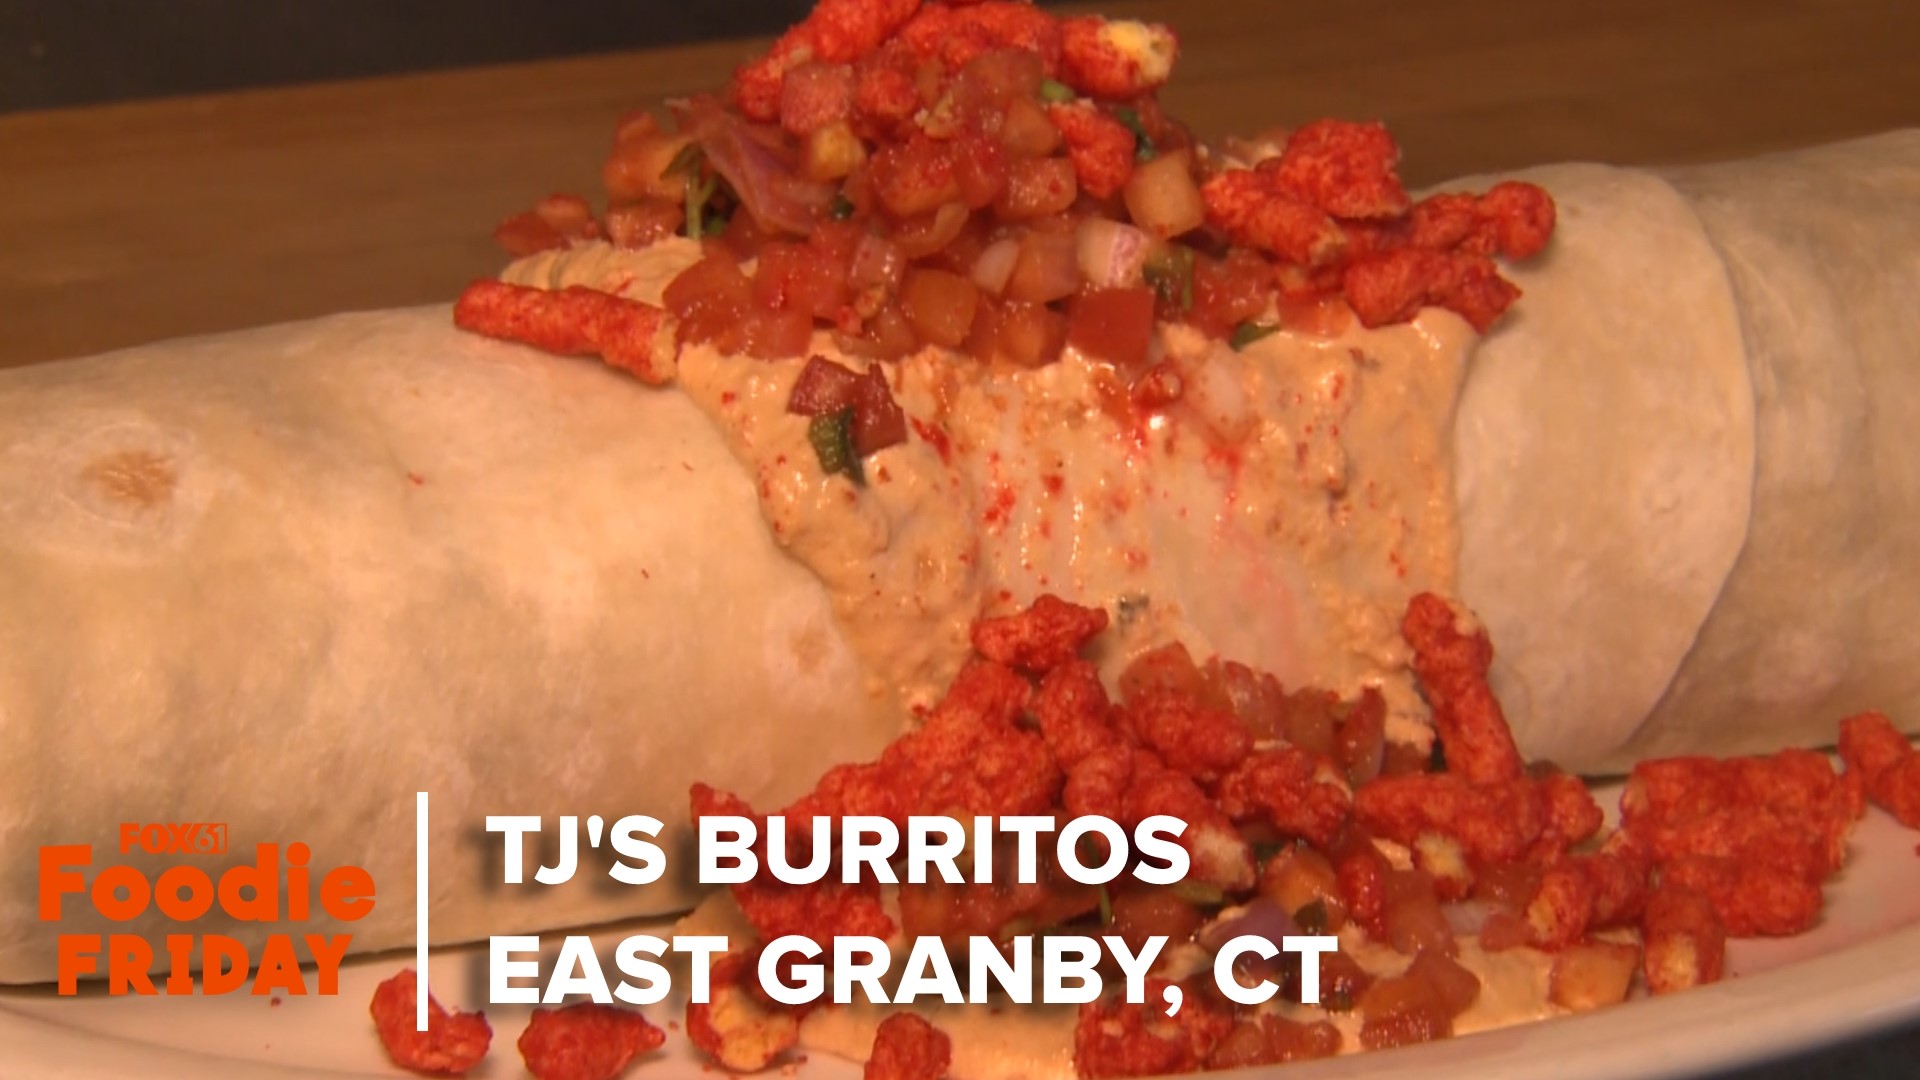 福克斯61频道的马特·斯科特走访了位于东格兰比的TJ's Burrito's，品尝了咖啡、汉堡、早餐，当然还有墨西哥卷饼。